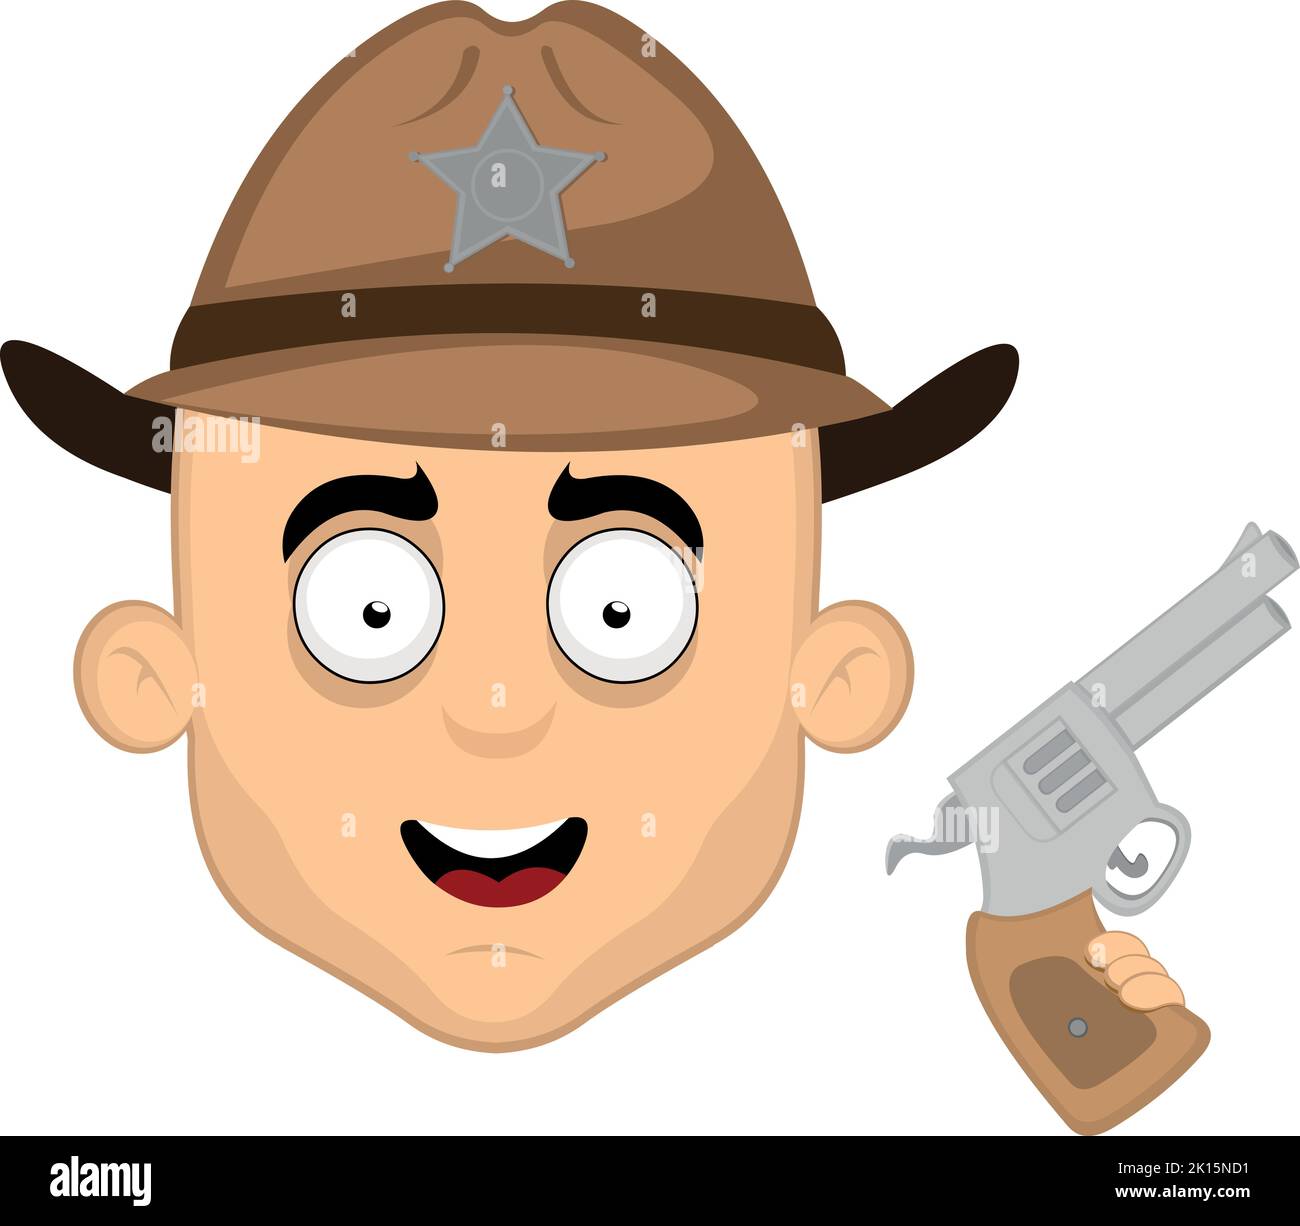 Vecteur émoticône illustration du visage d'un shérif de dessin animé avec un chapeau et un fusil dans sa main Illustration de Vecteur